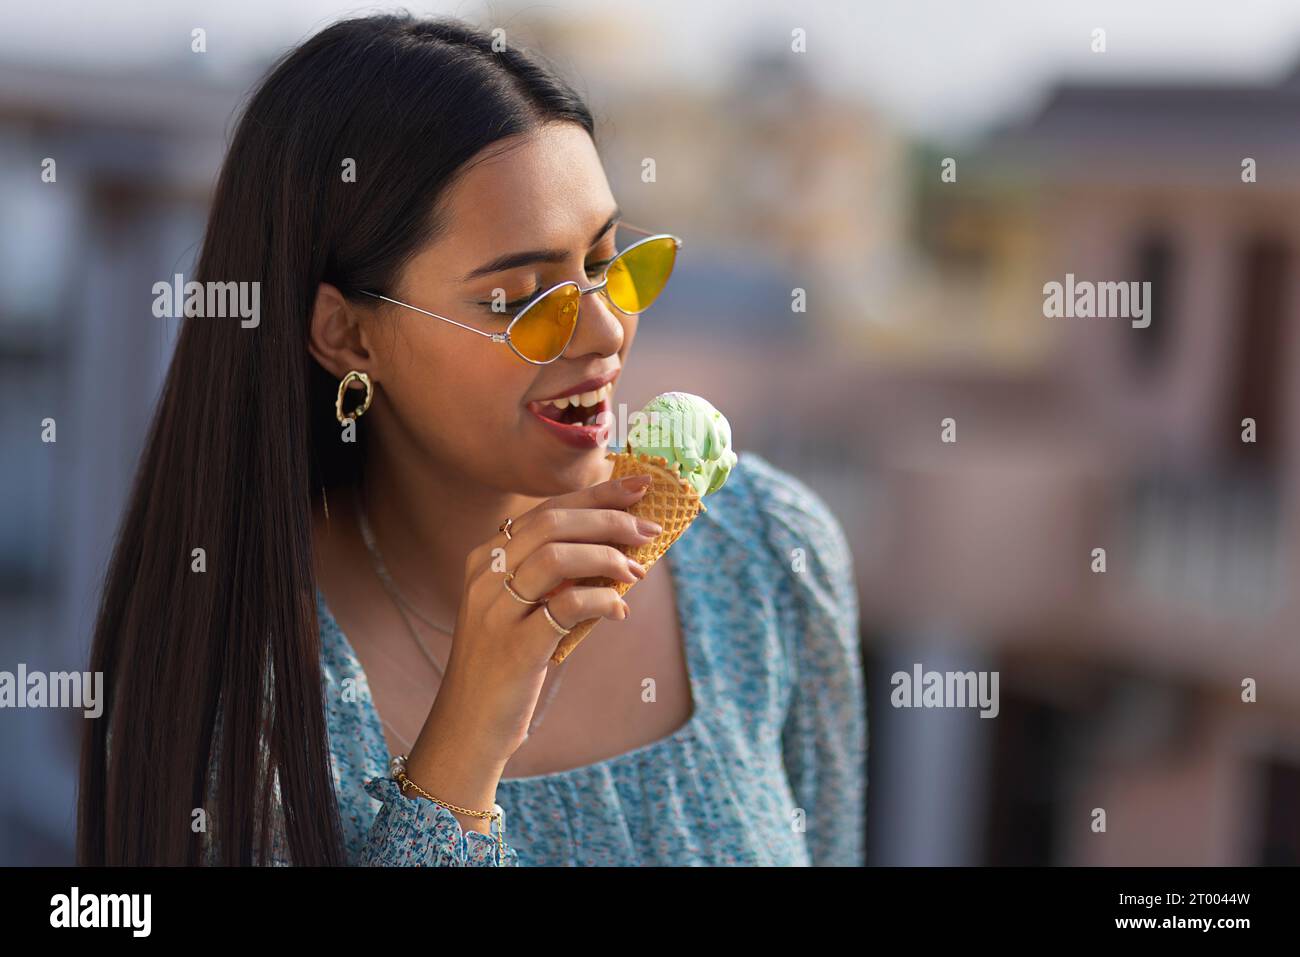 Porträt einer jungen Frau, die Eis im Kegel isst Stockfoto